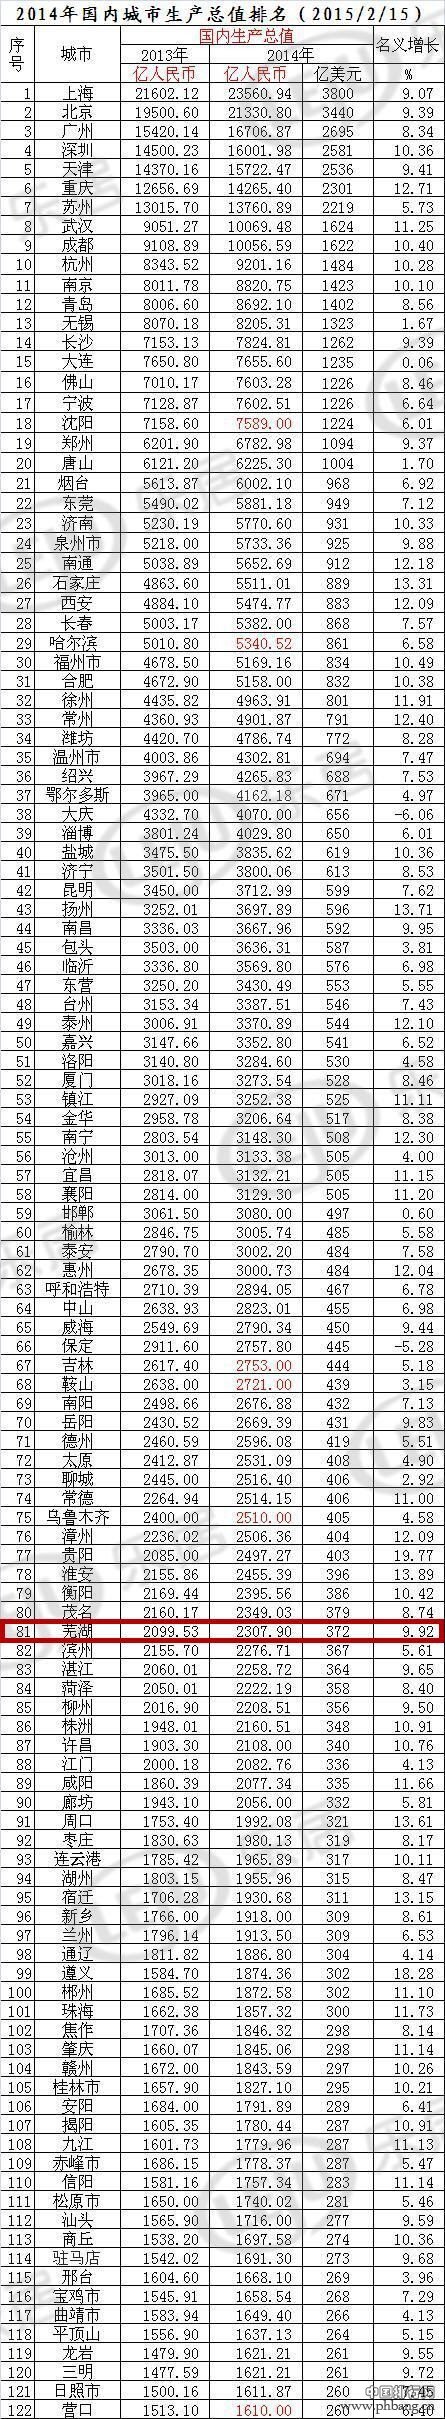 2015中国城市GDP排名出炉 芜湖排82名